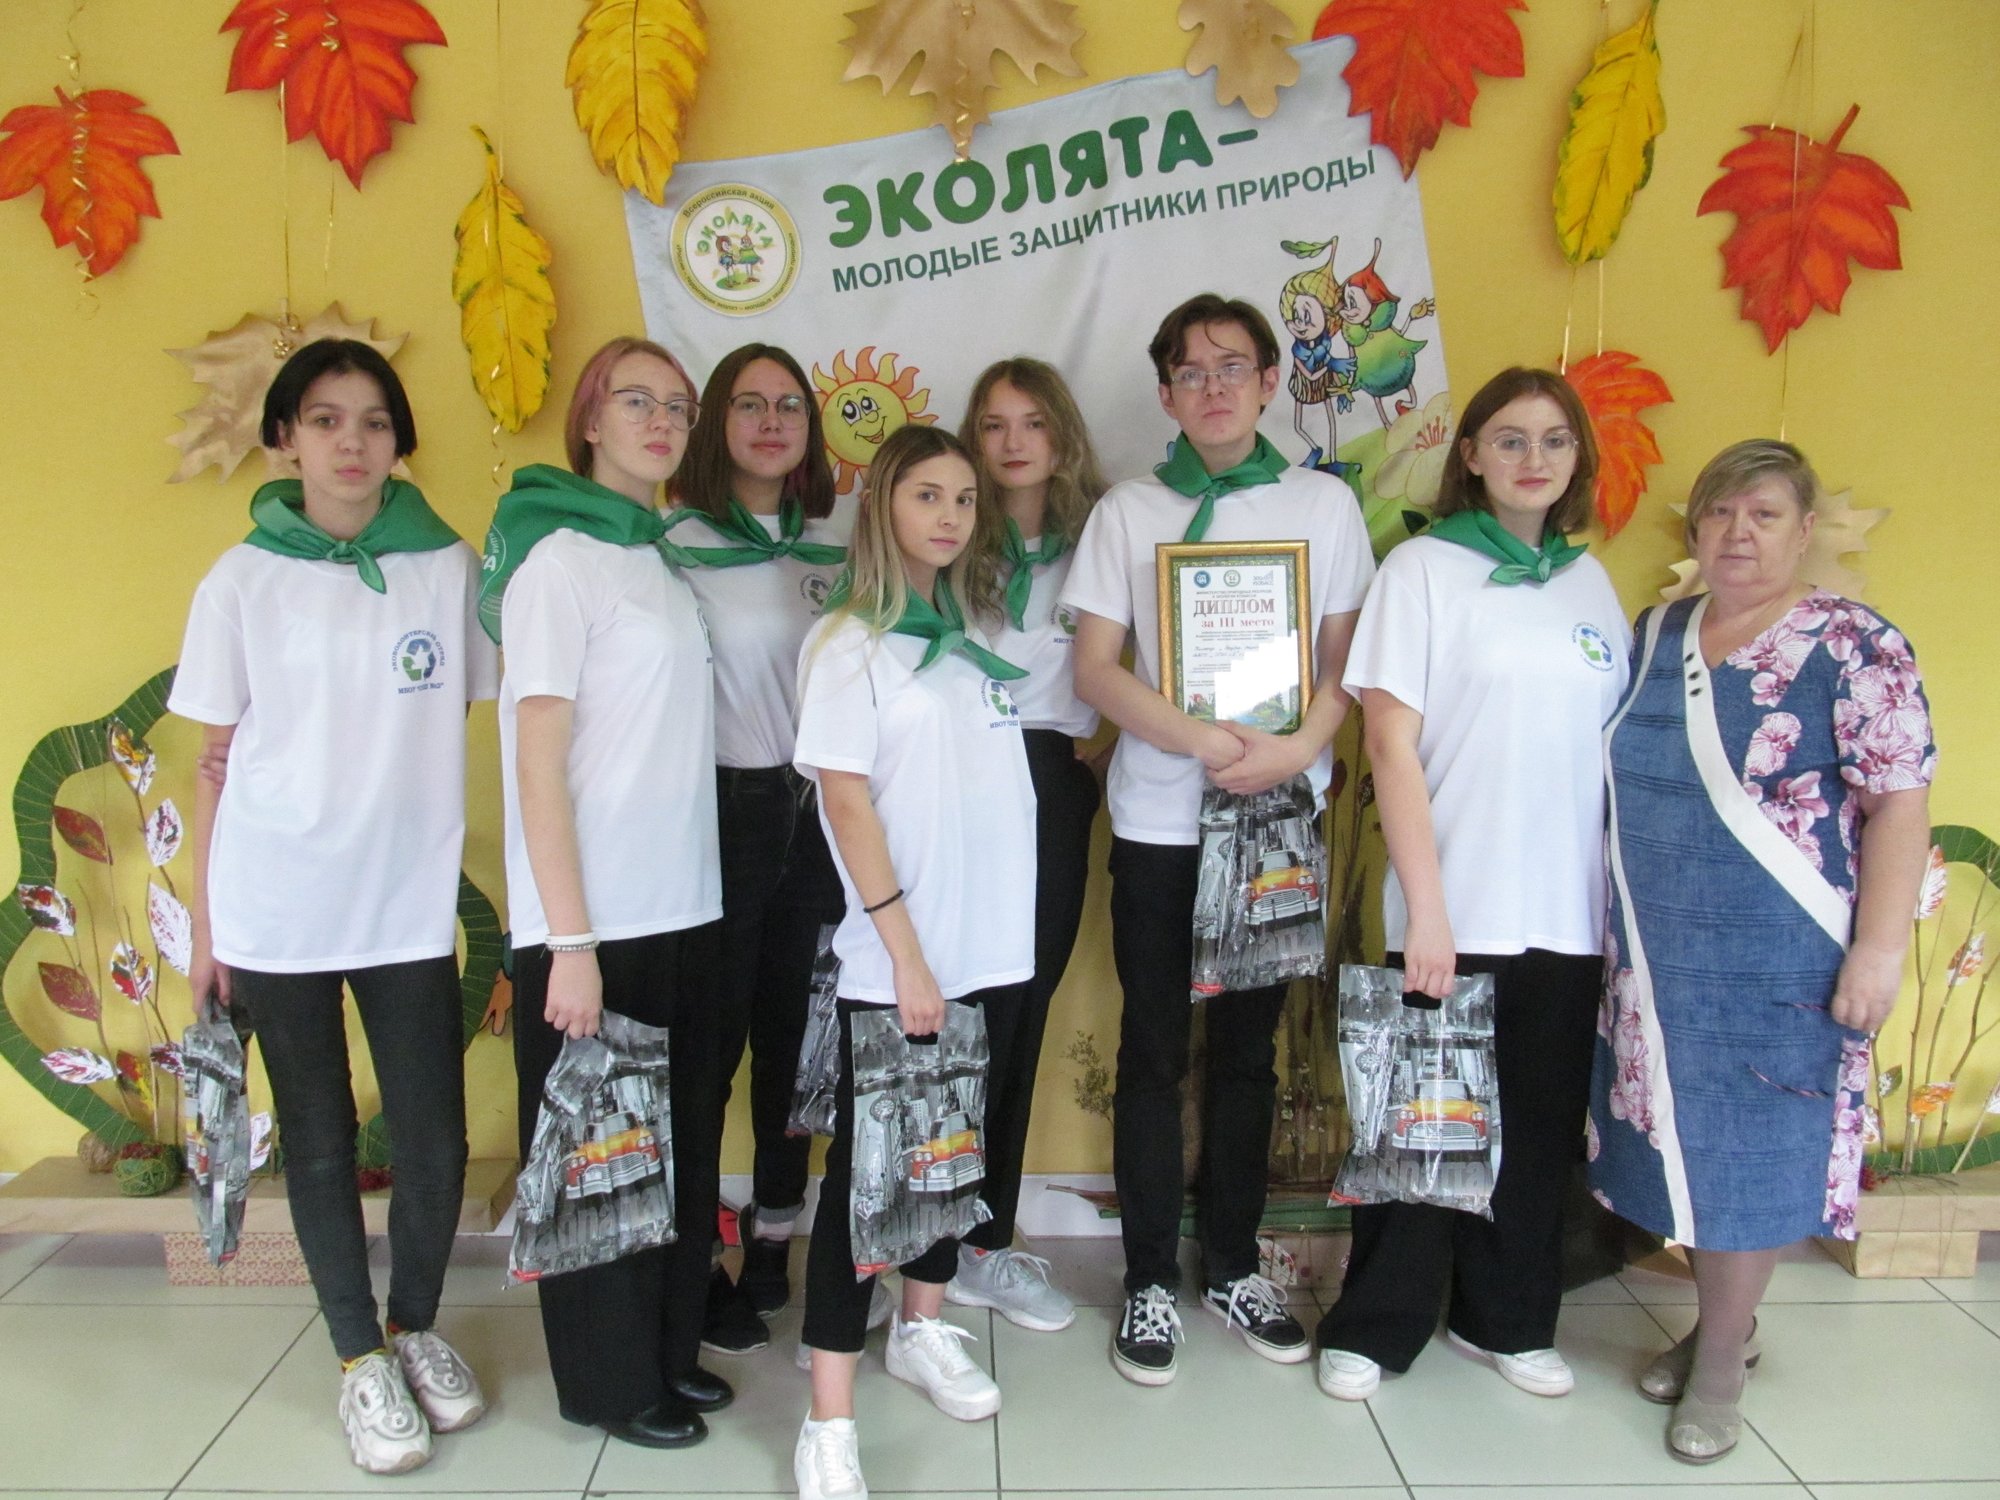 Ежегодный Всероссийский праздник «Эколят - молодых защитников природы» С заслуженной наградой